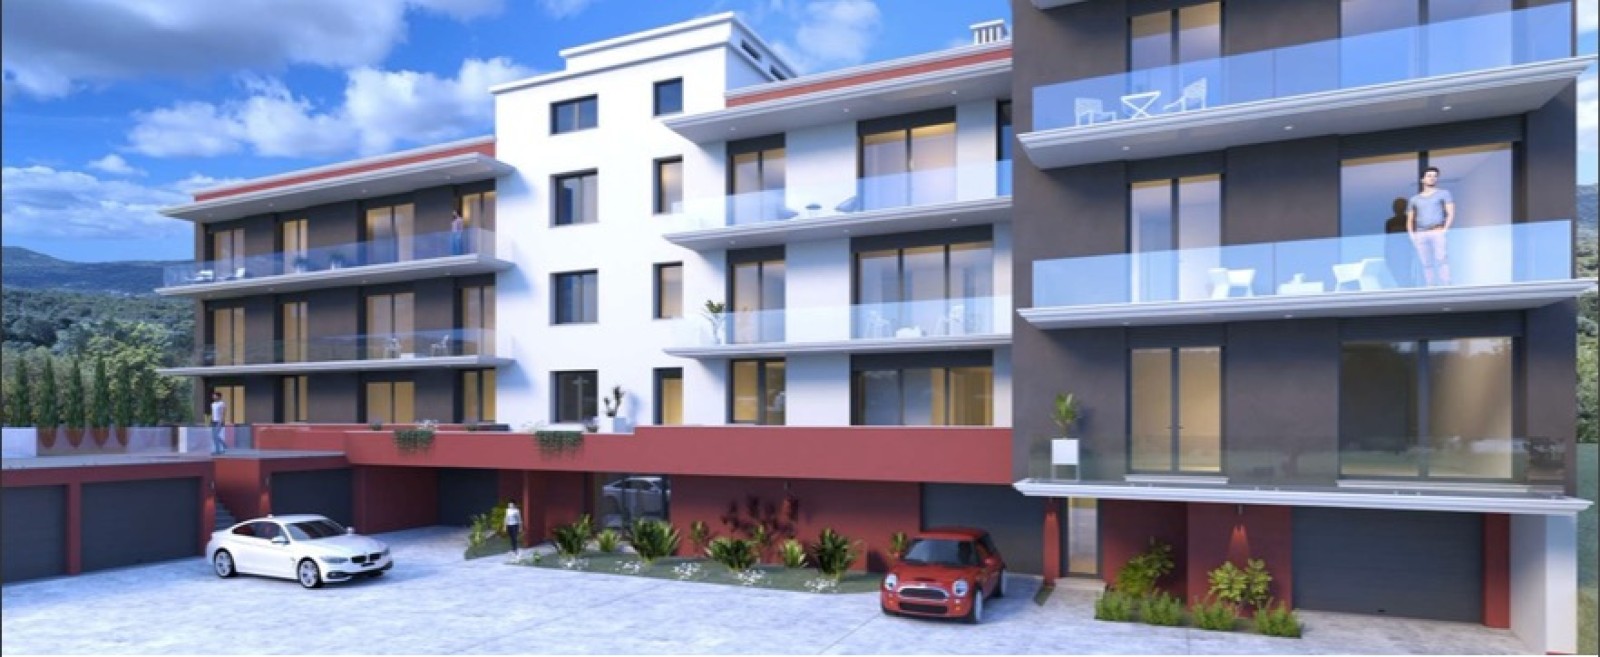 Apartamento duplex T5, para venda em São brás de Alportel, Algarve_226392